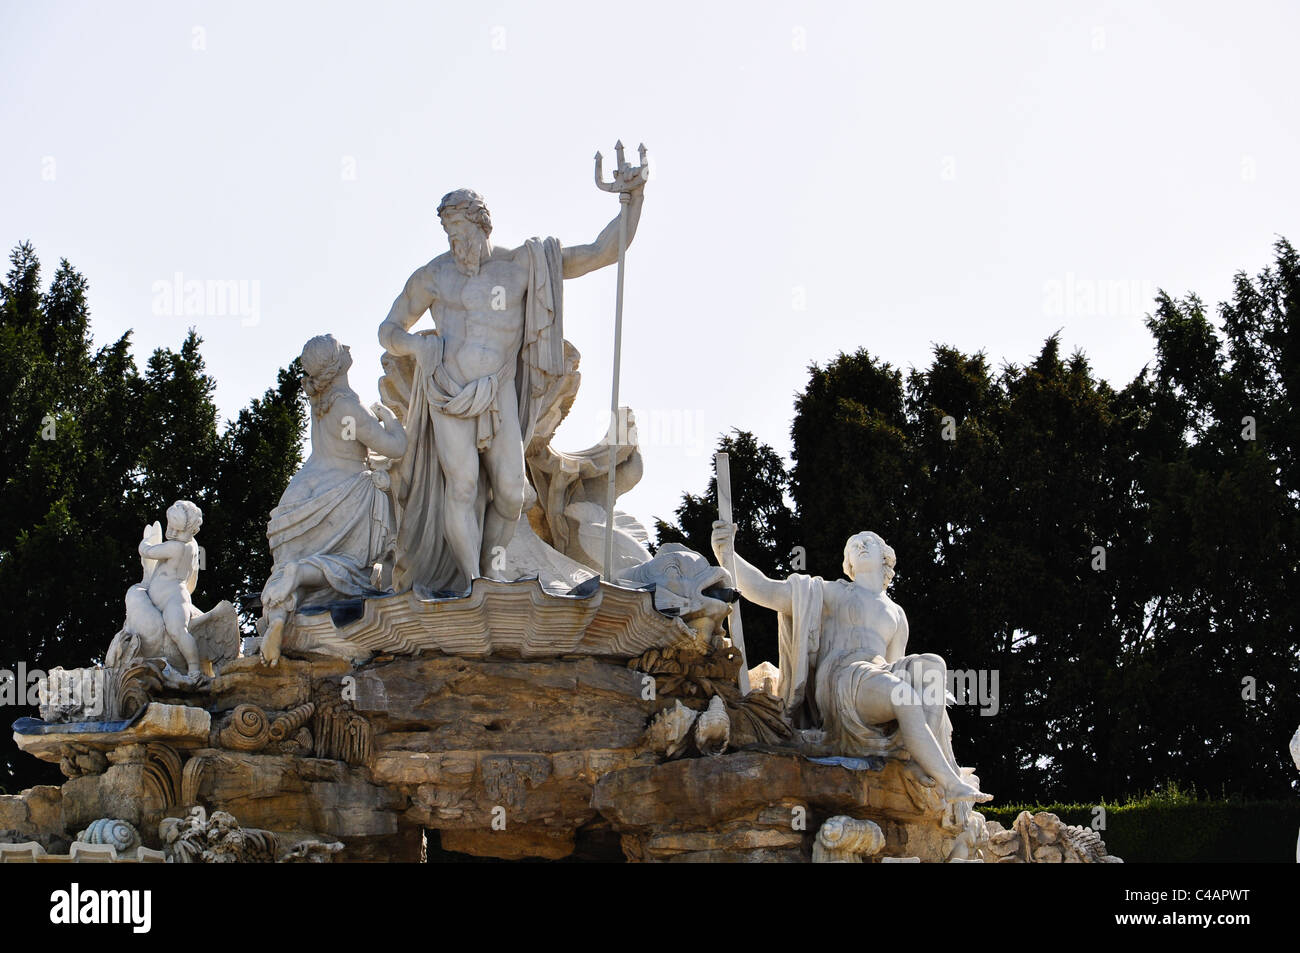 Estatua del dios griego Neptuno en una fuente en Viena Foto de stock